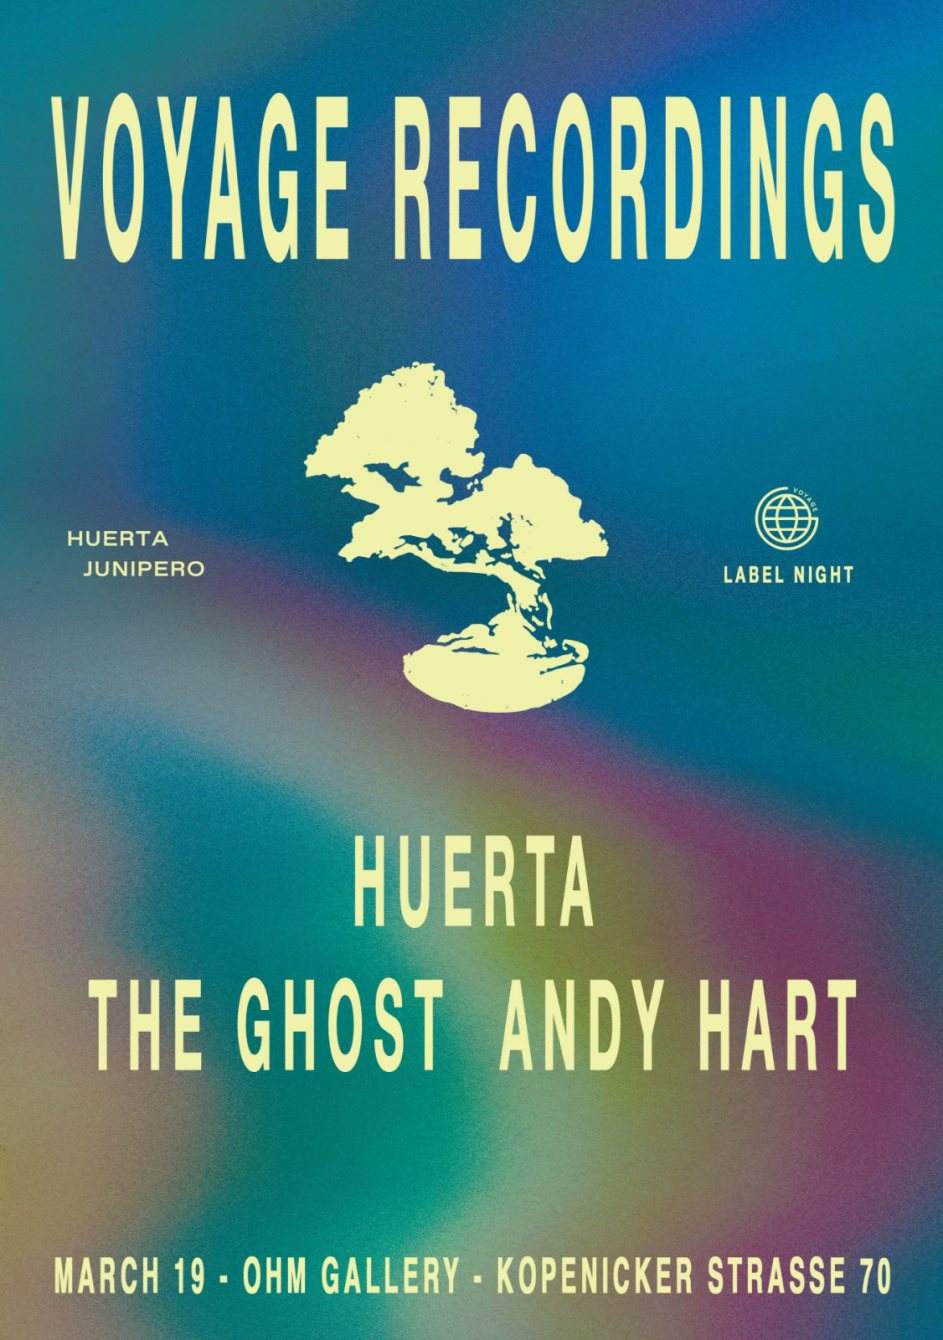 Voyage Recordings: Huerta Junipero Album Release - Página frontal